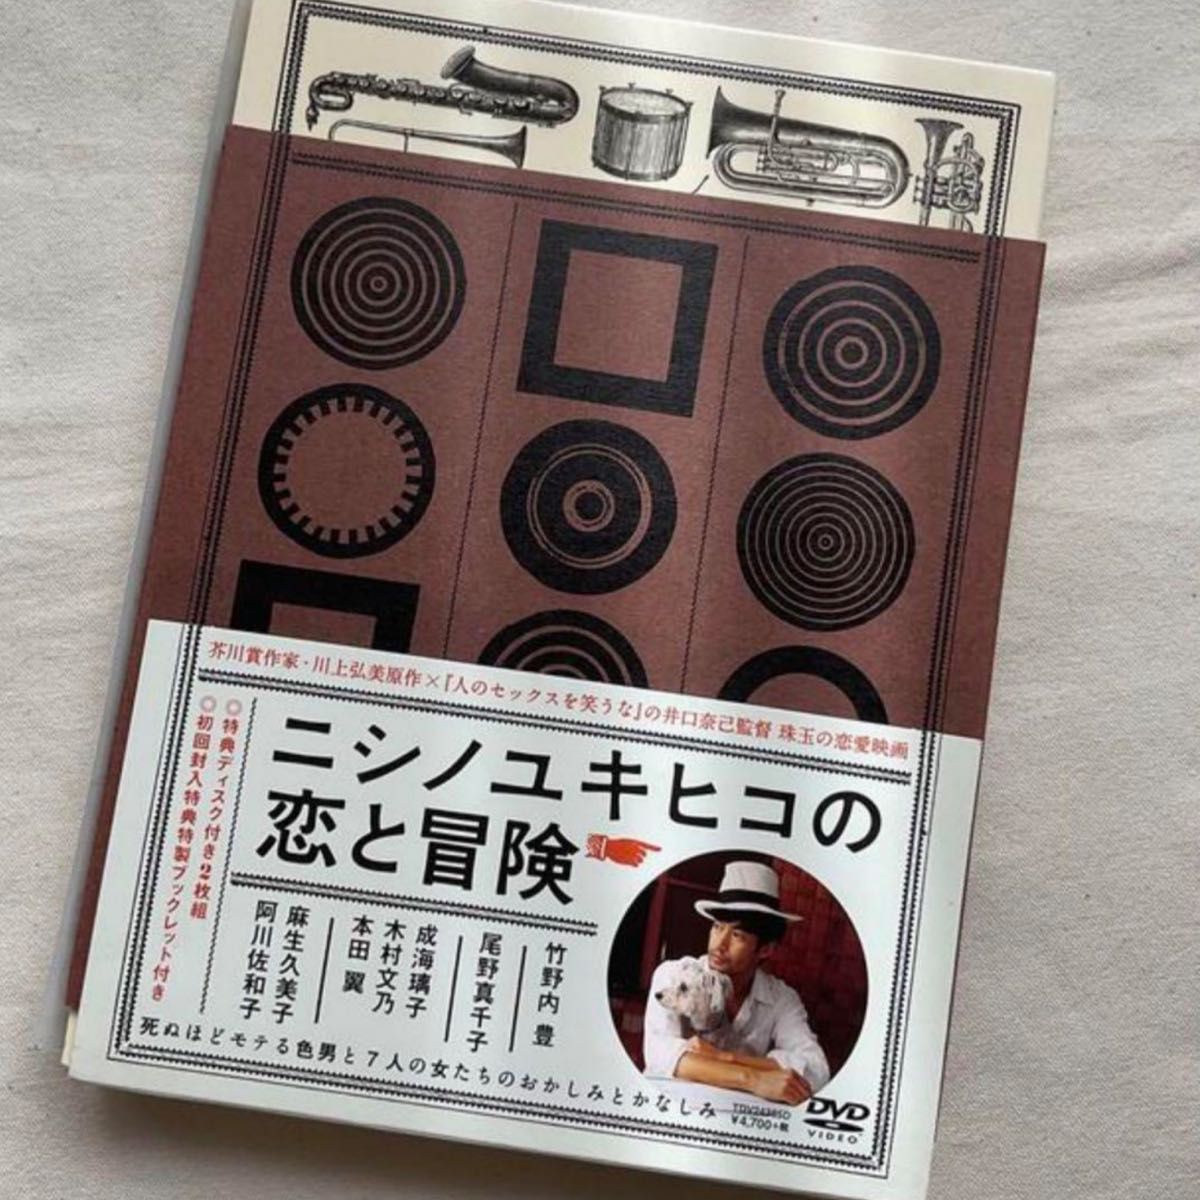 邦画「ニシノユキヒコの恋と冒険」DVD